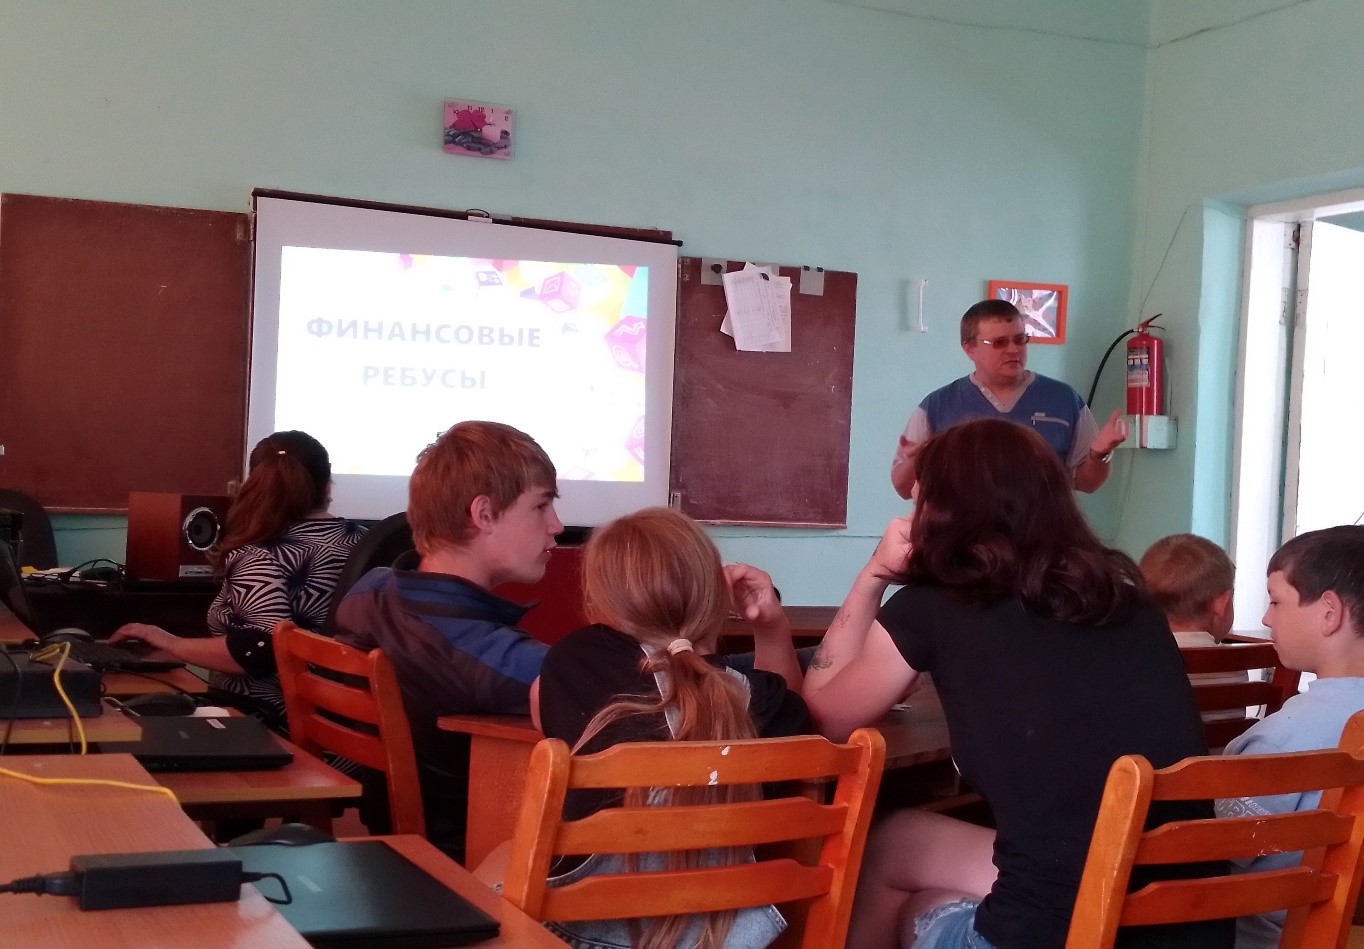 Акции «Финансовая грамотность в муниципалитетах развитие финансовой грамотности и налоговой культуры в муниципальных образованиях Ульяновской области» были организованы мероприятия школьников и студентов.